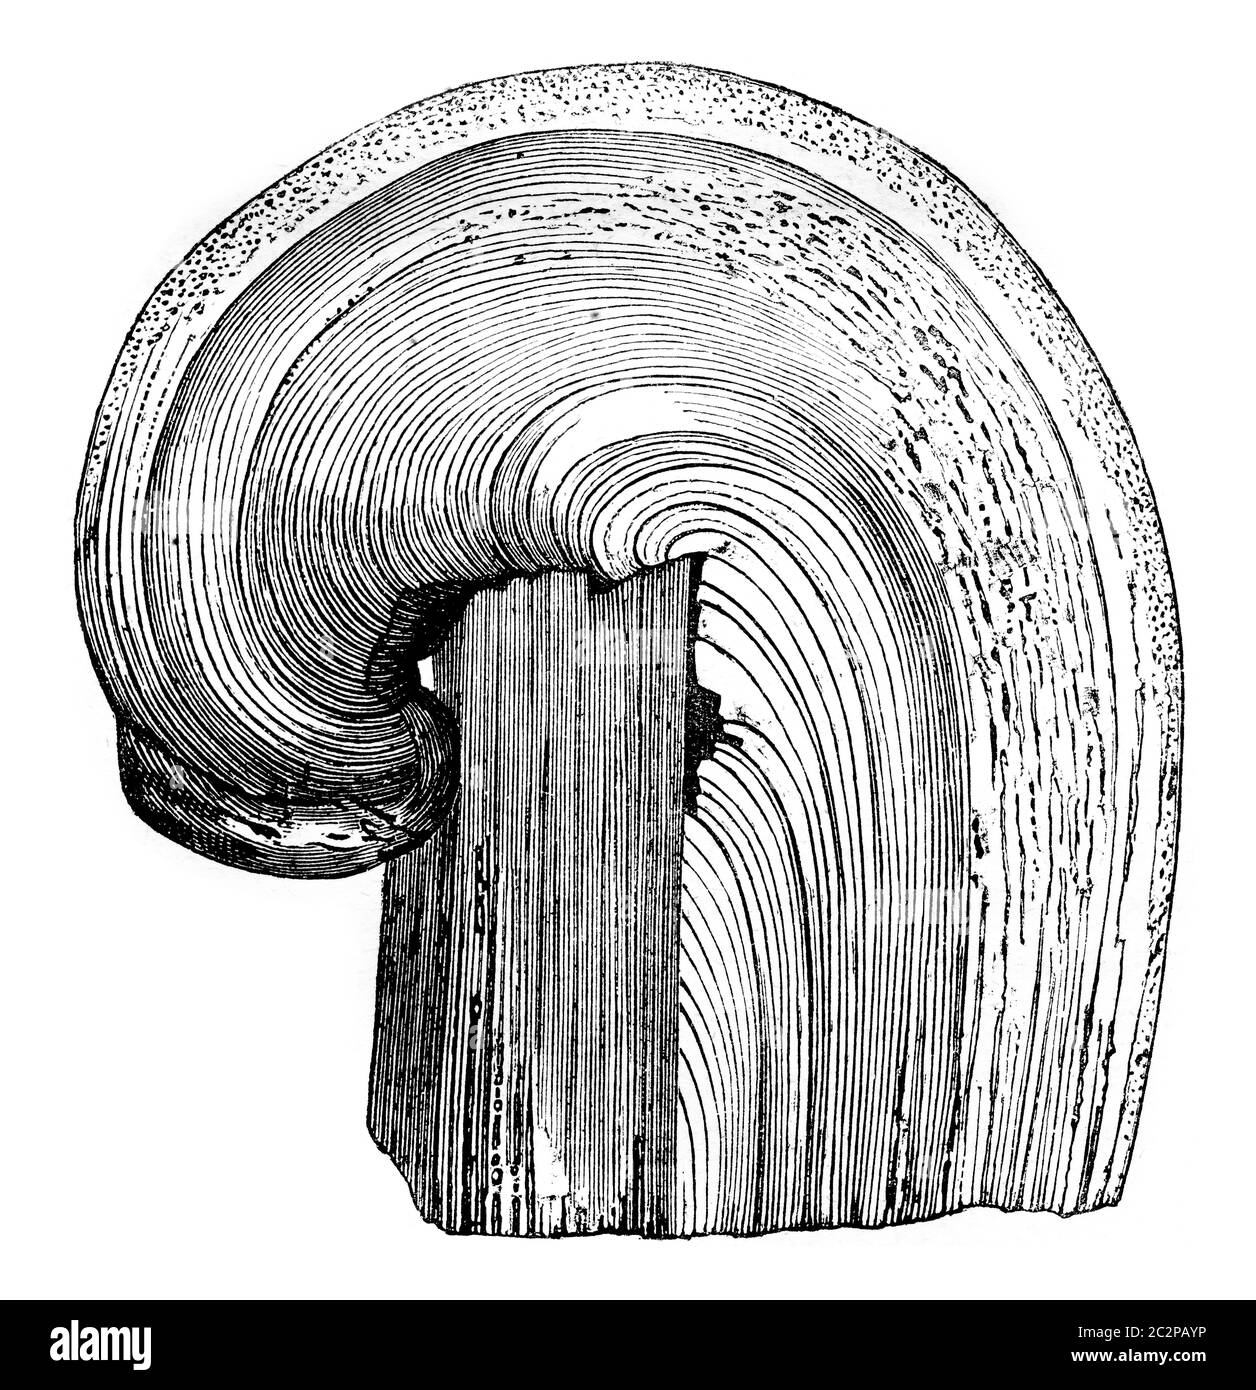 Ceppo di abete bianco che continua a vegetare, illustrazione vintage incisa. Magasin Pittoresque 1844. Foto Stock